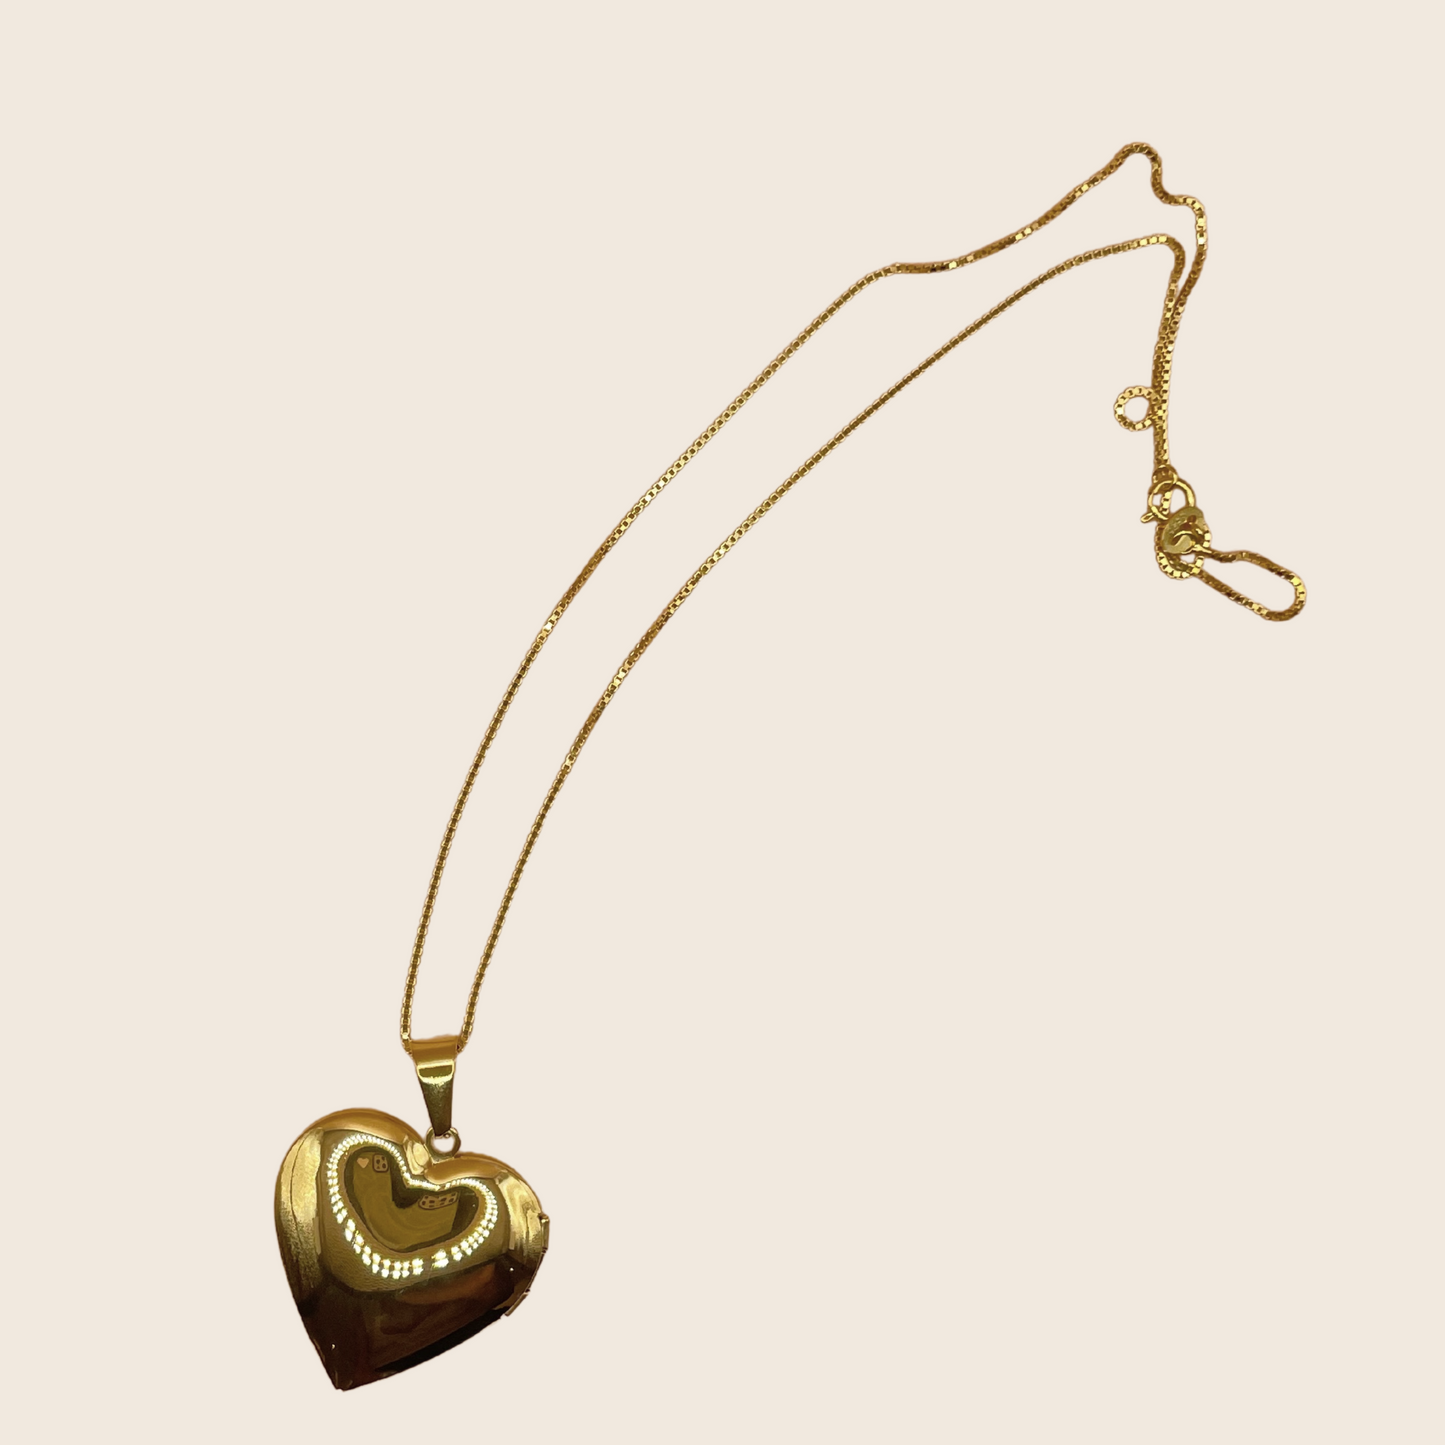 Heart Locket Necklace - Lemon Lua Heart Locket Necklace Lemon Lua Lemon Lua Heart Locket Necklace Heart Locket Necklace